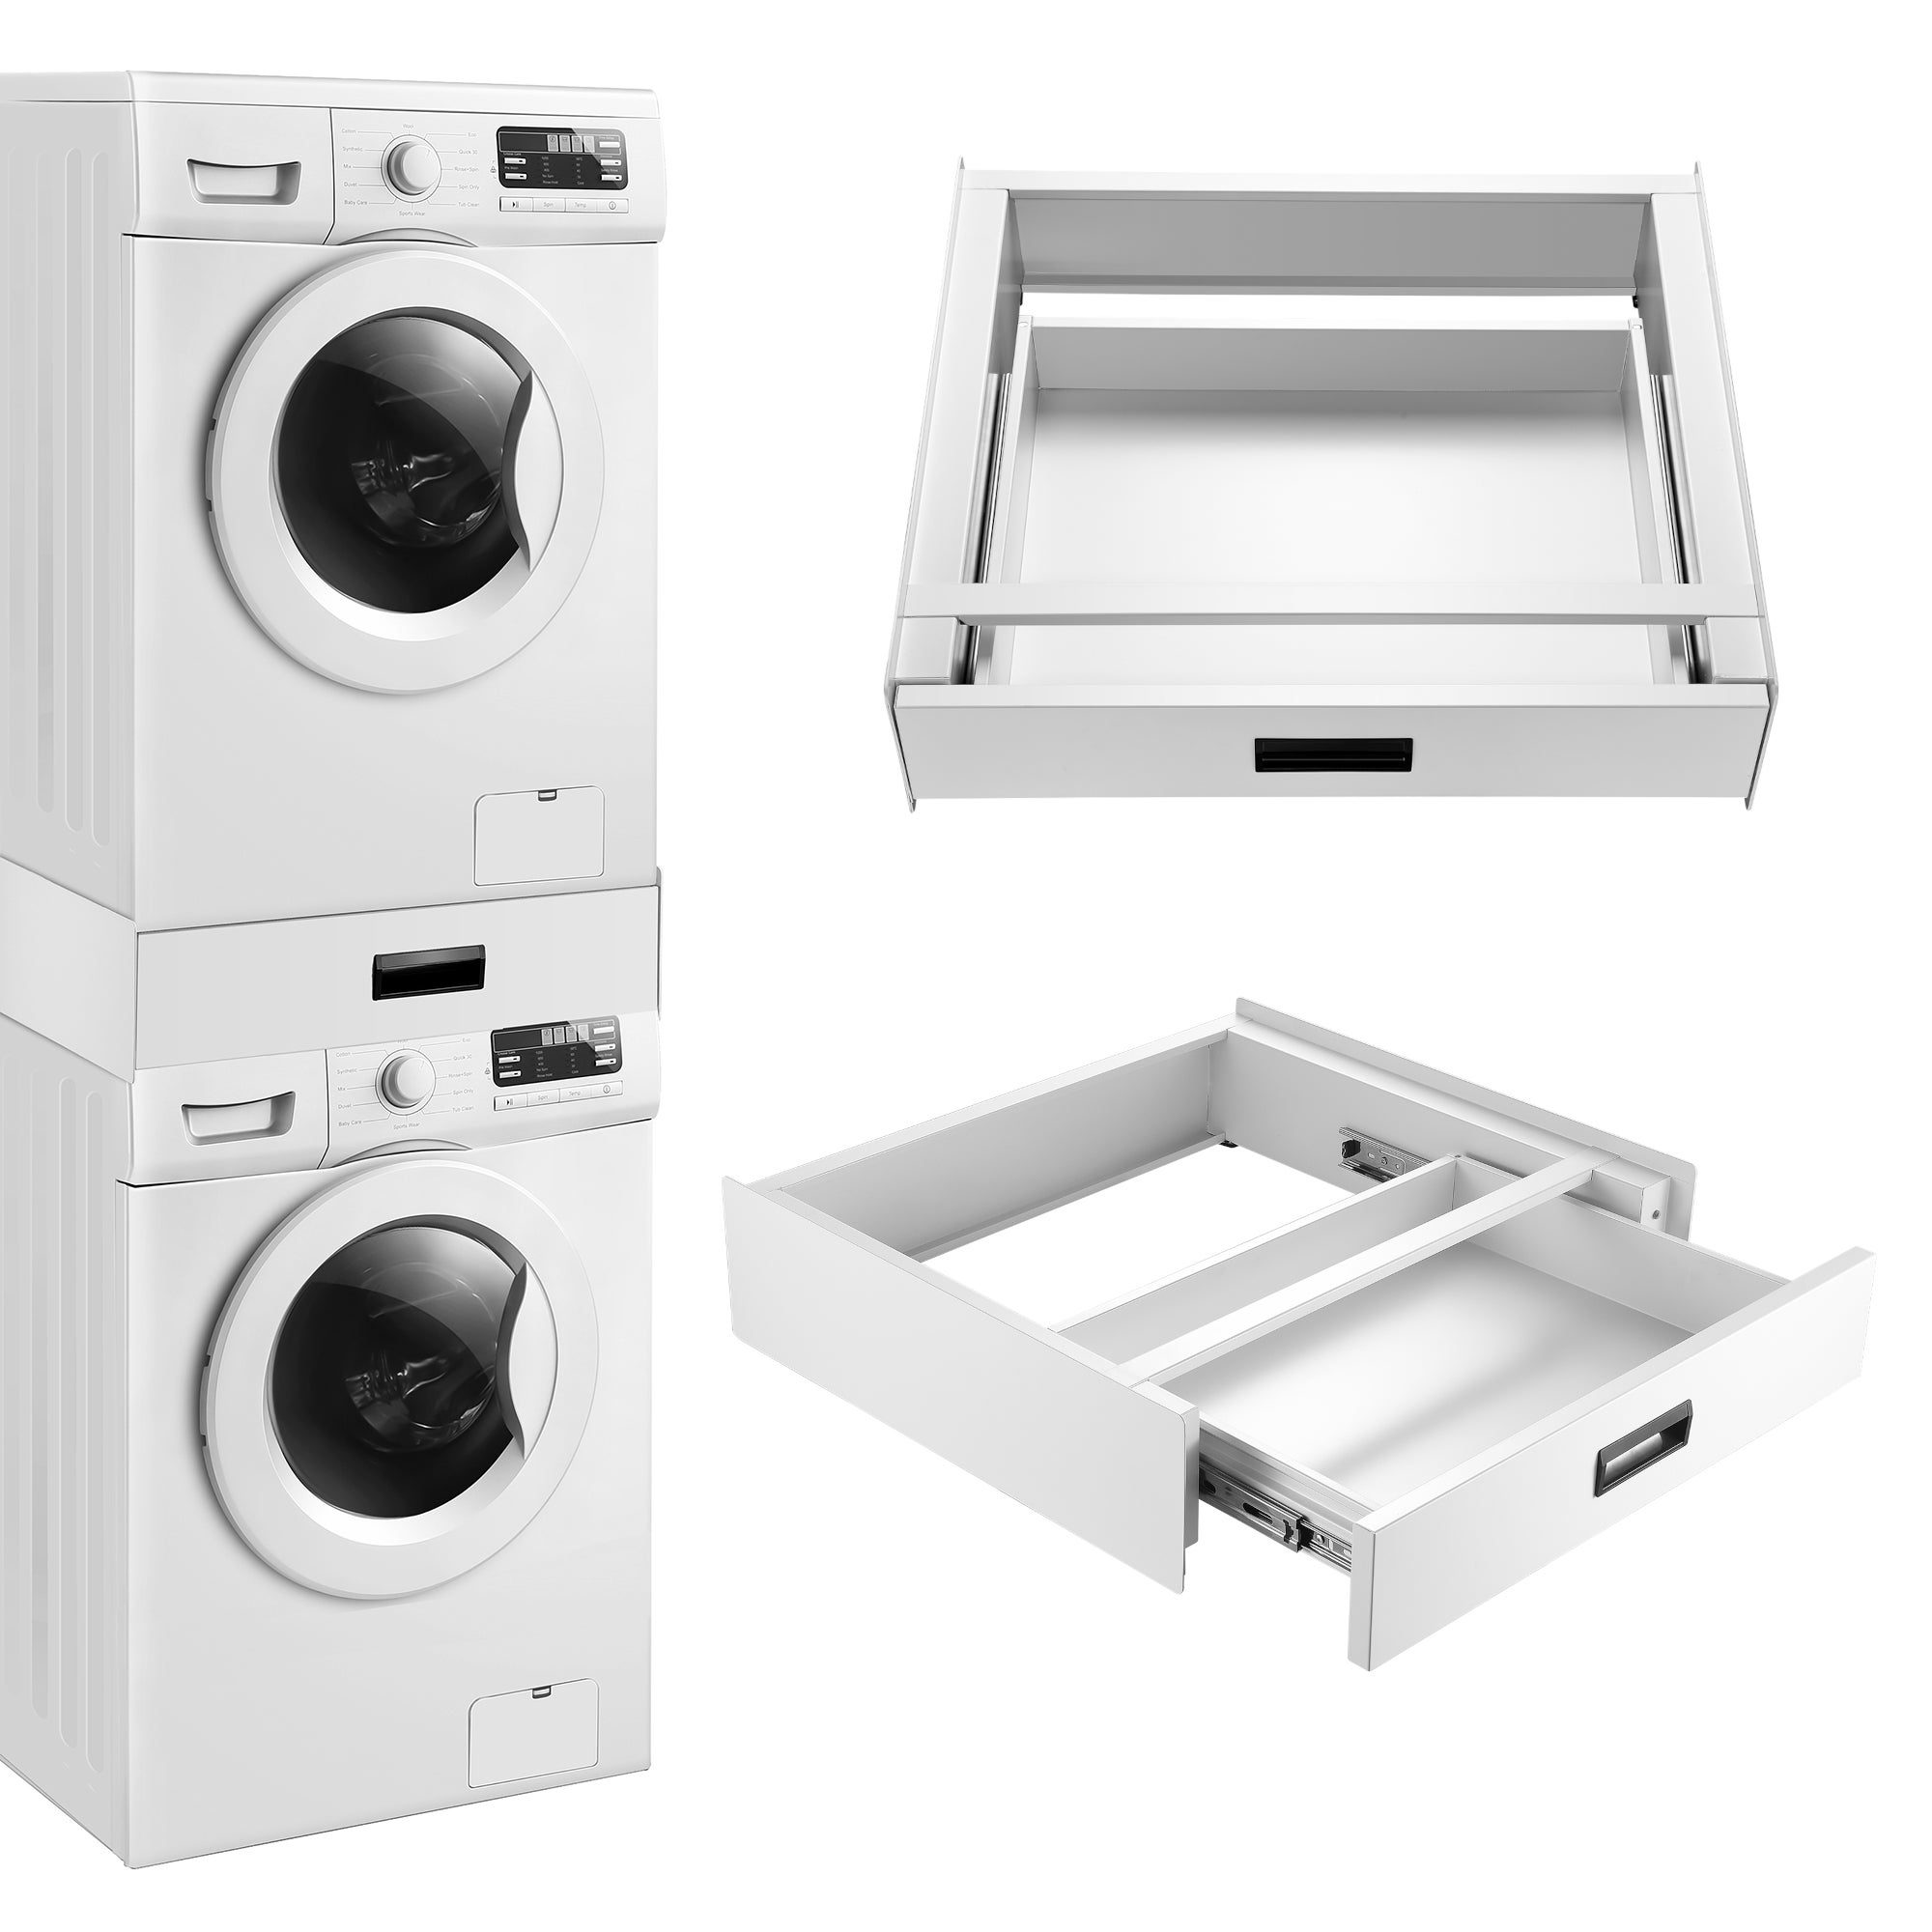 Kit d'empilage universel / cadre de connexion pour lave-linge et sèche-linge